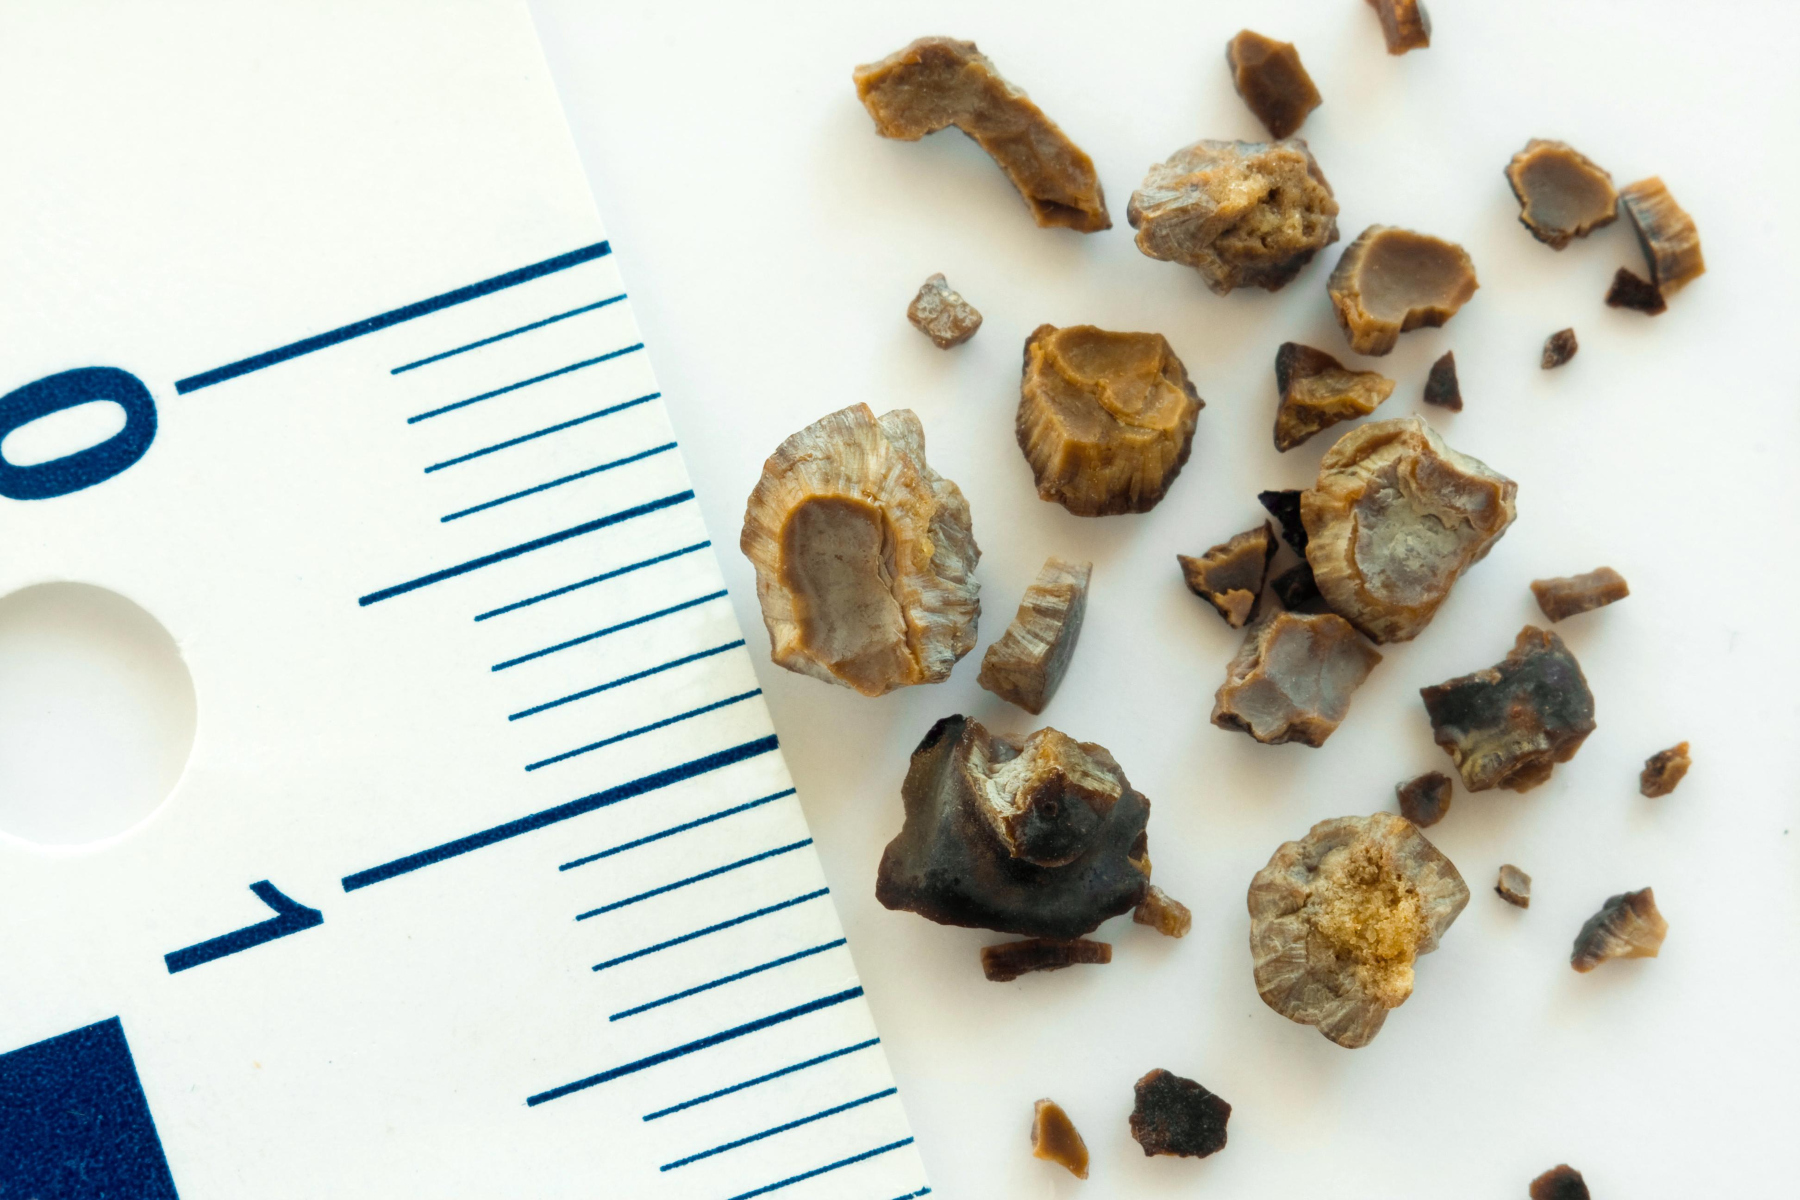 Πέτρα στα νεφρά: Πώς αντιμετωπίζονται οι πέτρες στα νεφρά;